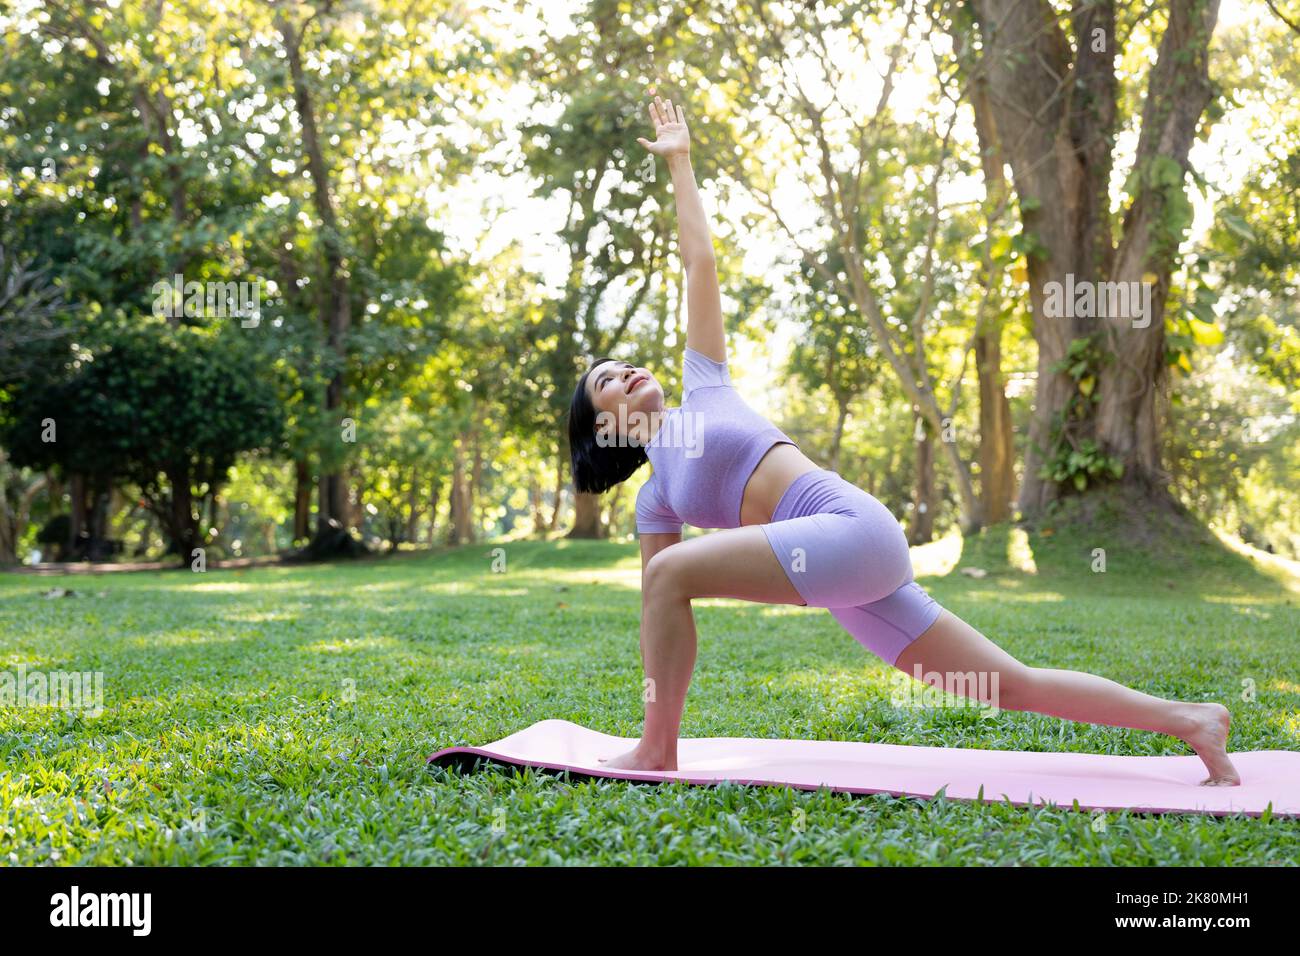 Attraktive junge asiatische Frau praktiziert Yoga, trainiert im Park, steht ein Bein auf einer Yogamatte und zeigt eine ausgeglichene Haltung. Wellness-Lifestyle und Stockfoto